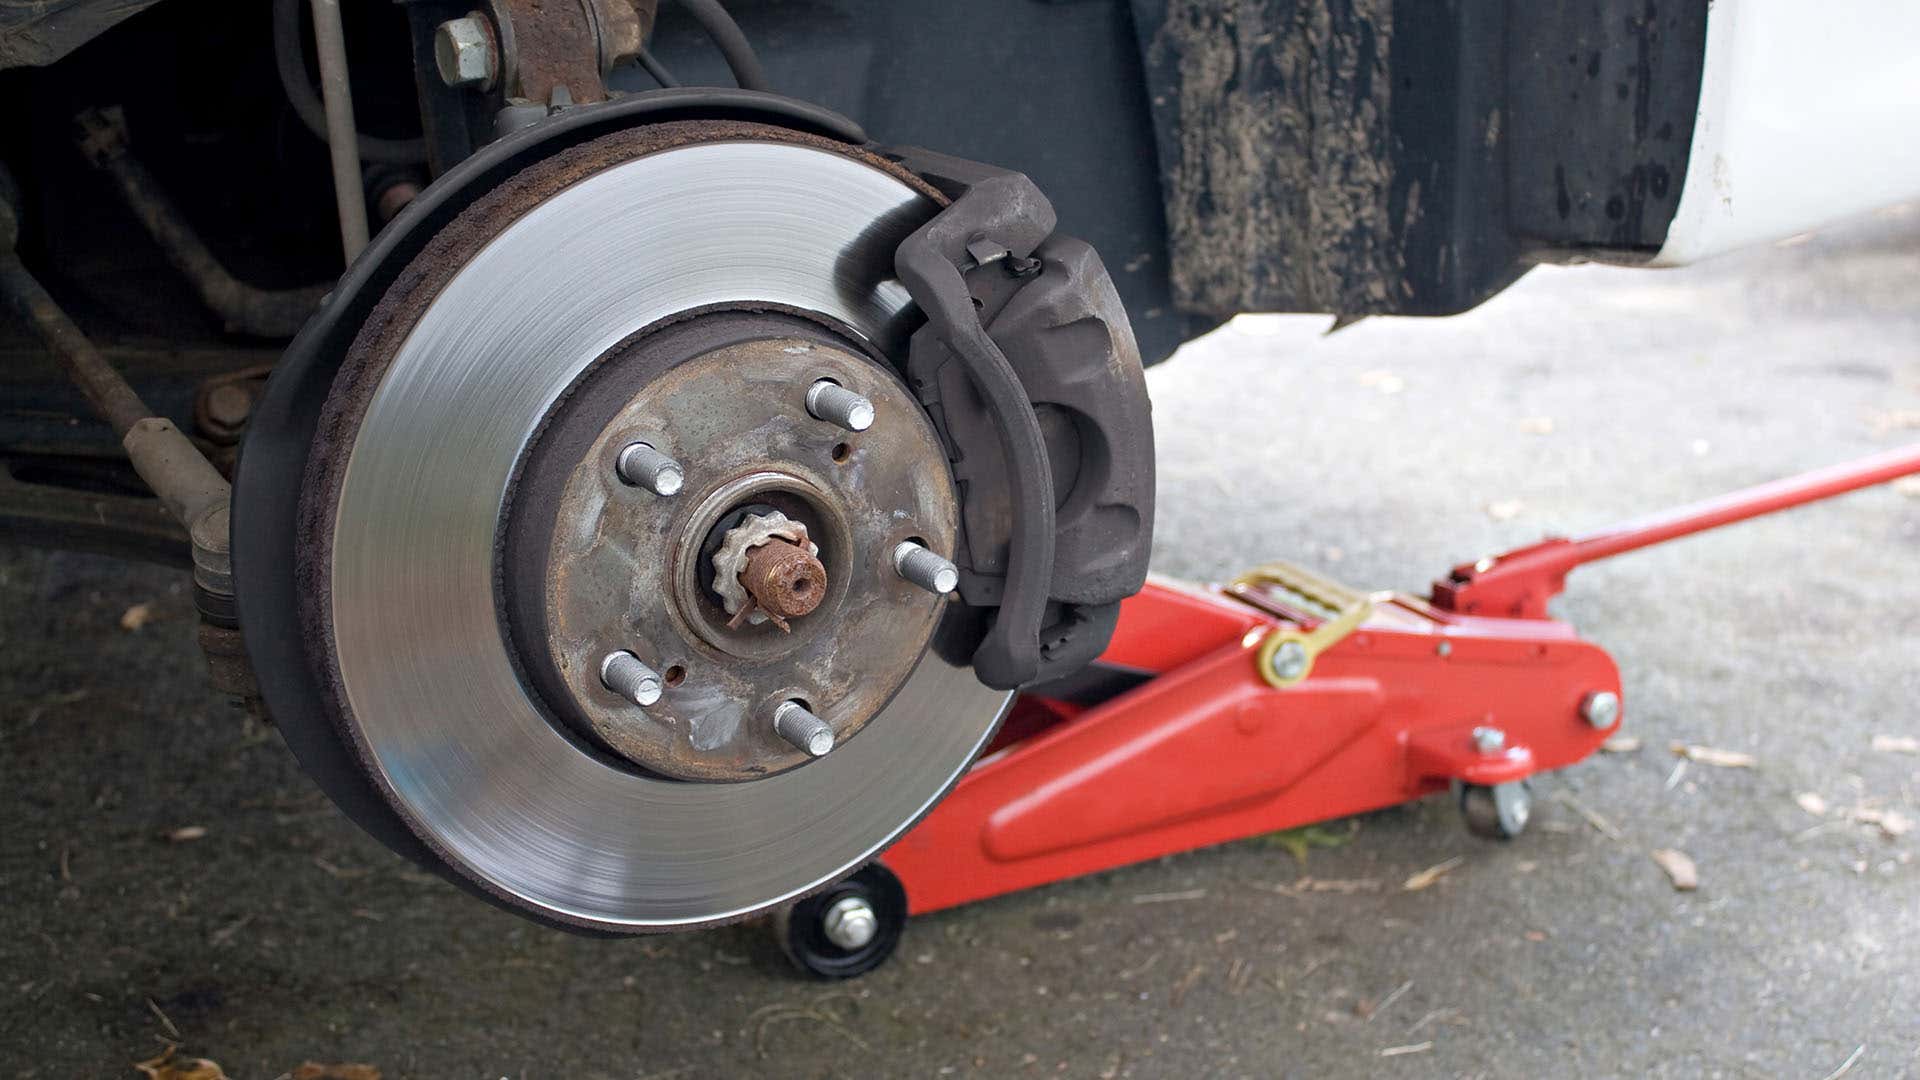 盘式制动器使用卡钳将垫压在转子上，以利用摩擦使车辆停止。